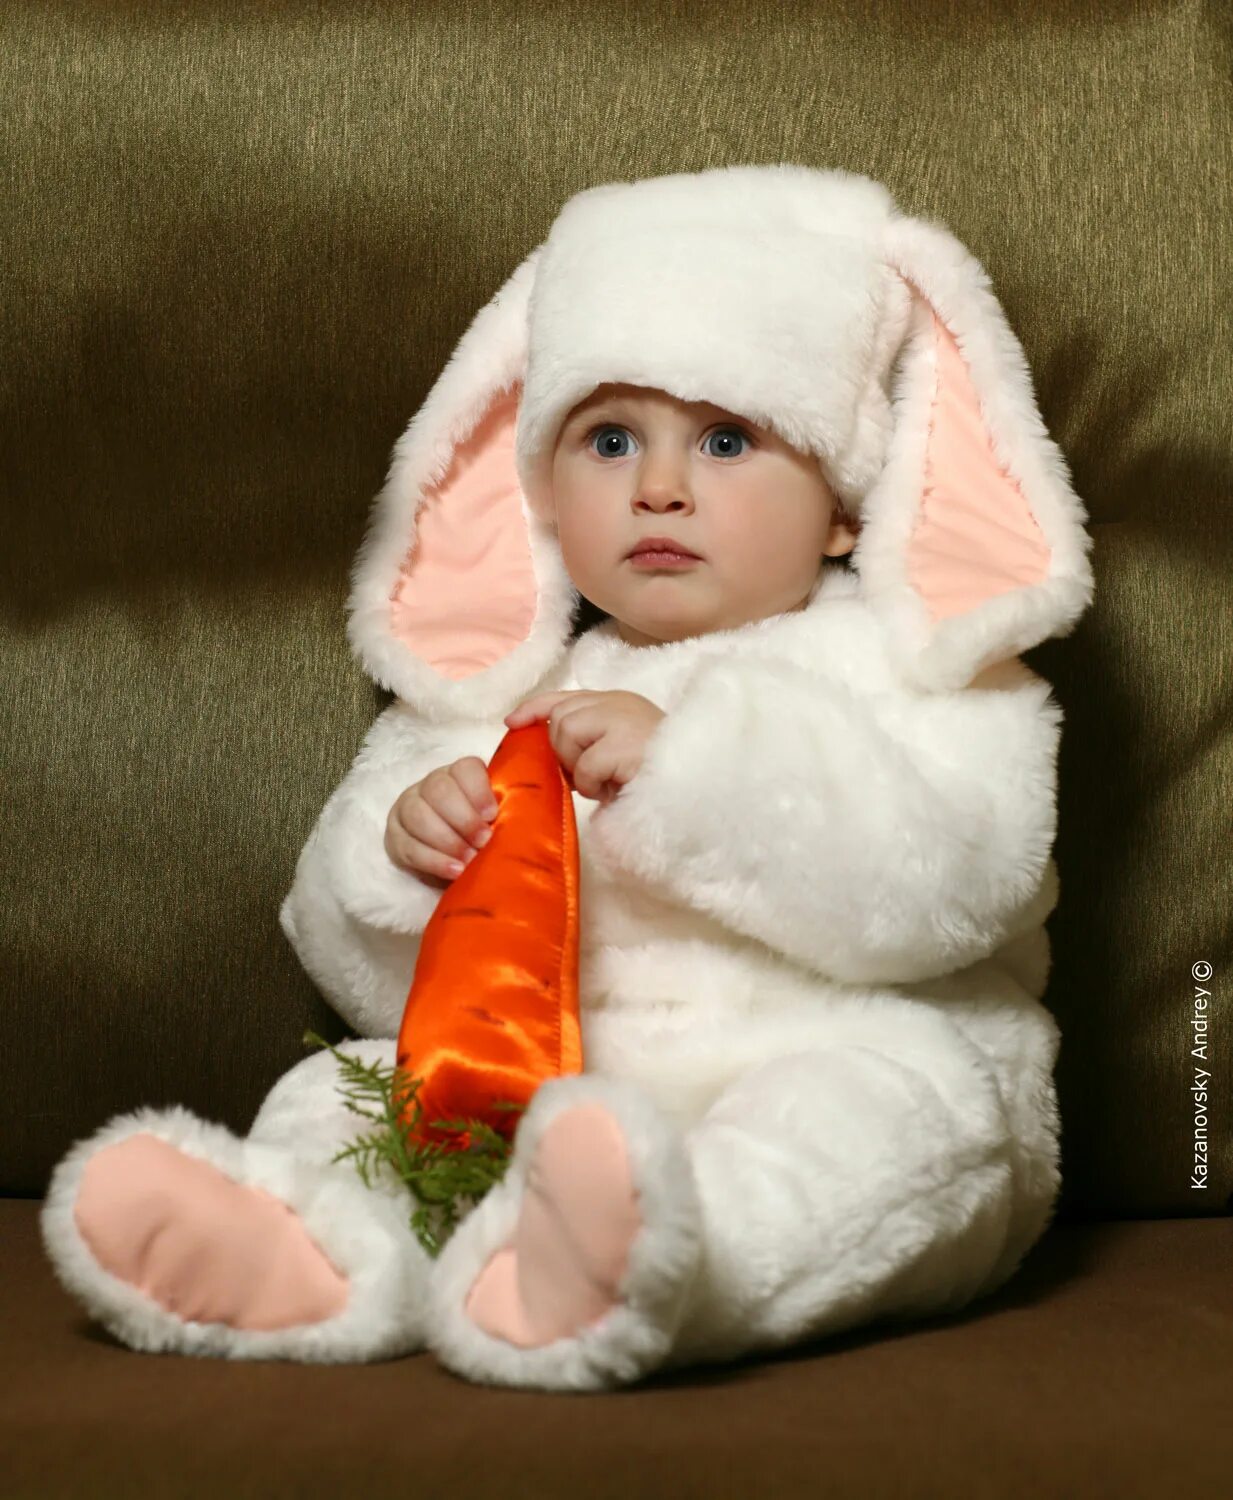 Девочка в костюме зайки. Костюм зайчика для малыша. Дети в костюмах. Ребёнок в костюме зайчика. Маленькая девочка в шубе.